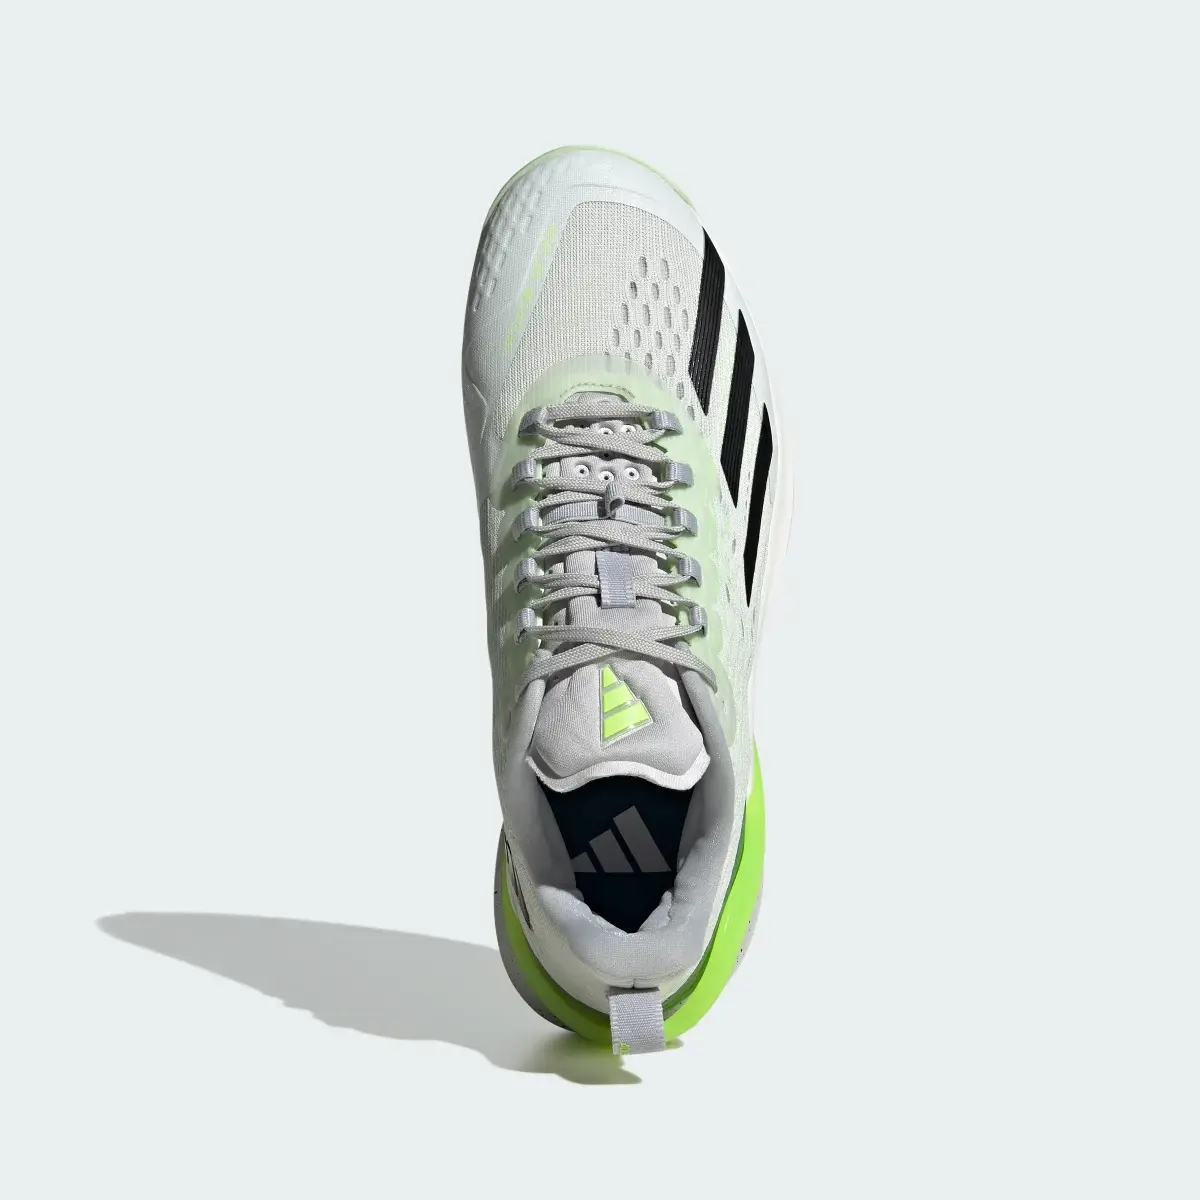 Adidas Adizero Cybersonic Tennis Shoes. 3